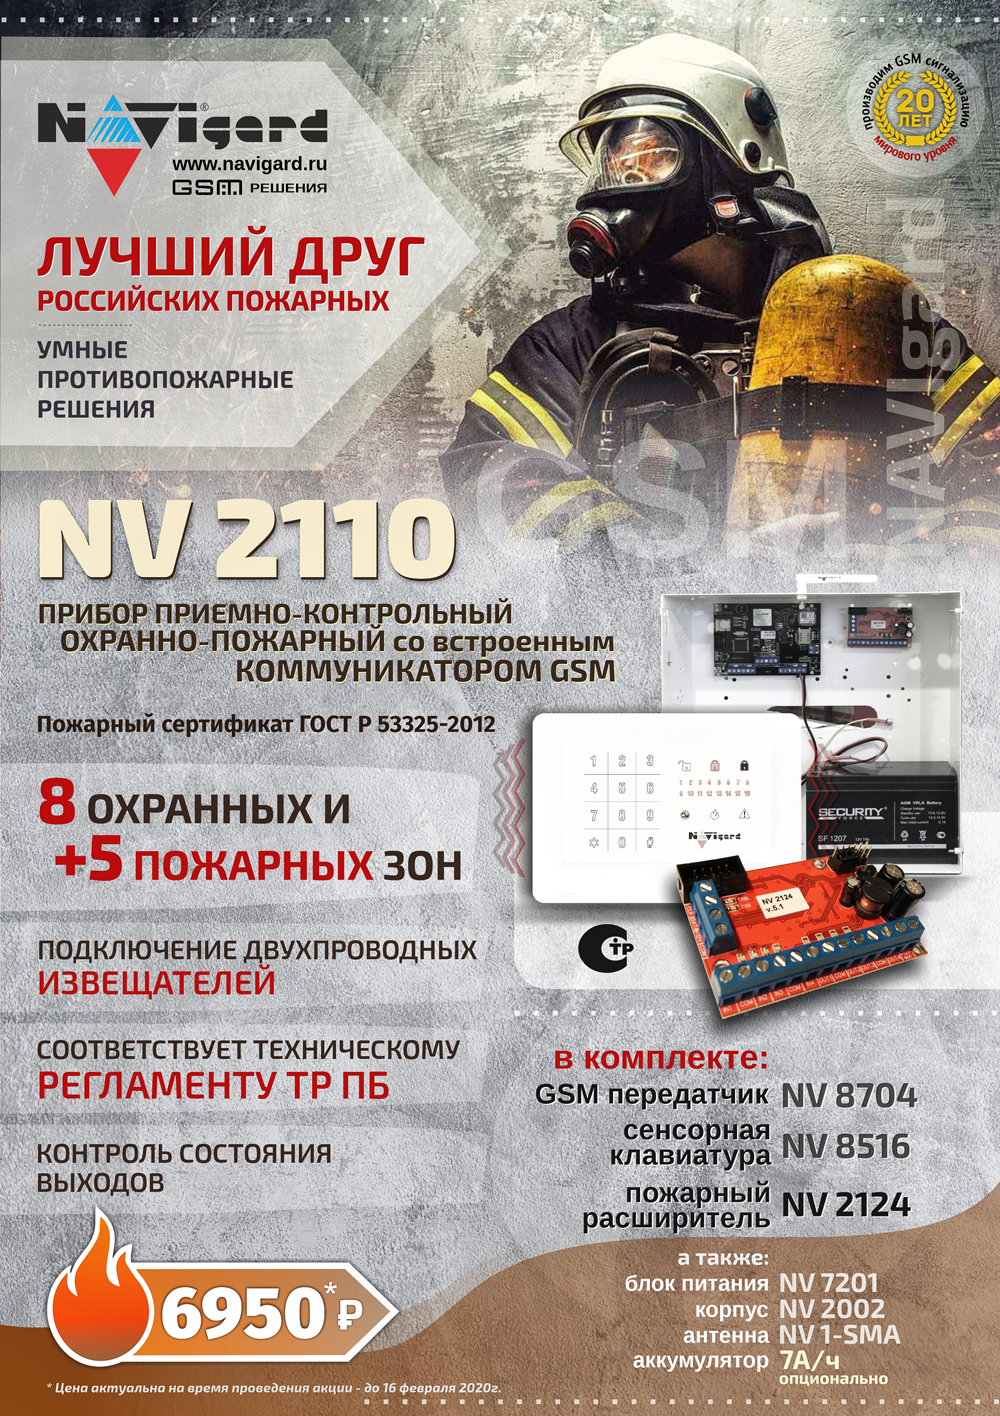 Купить Купить NAVIgard Комплект NV 2110 c пожарным расширителем NV 2124 в комплекте  в Москве. в Москве.